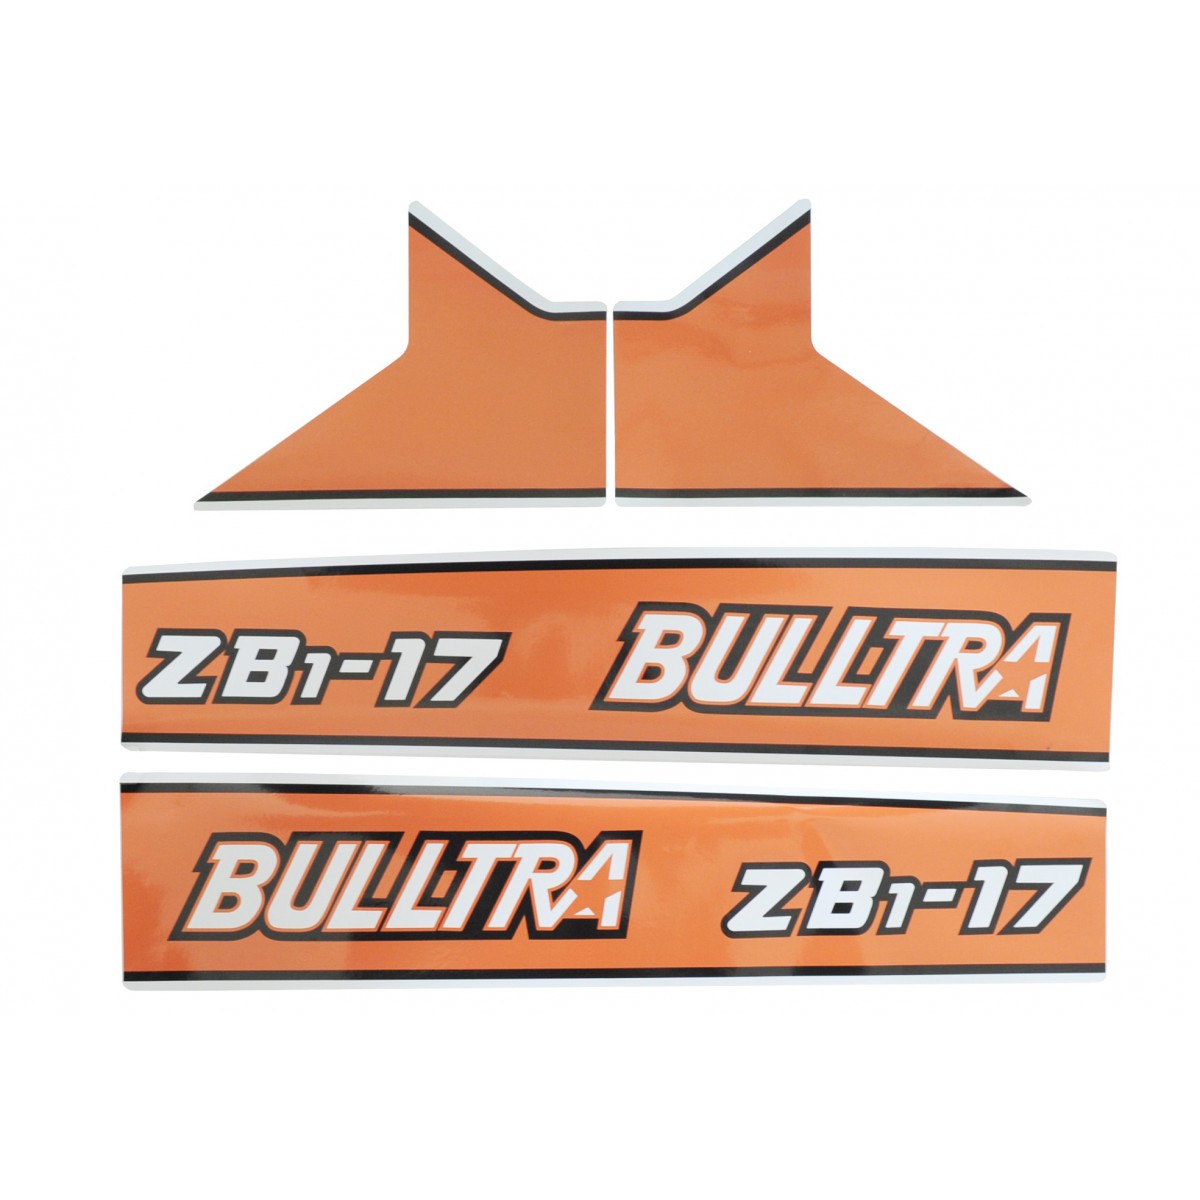 Kubota Bulltra B1-17, ZB1-17 stickers